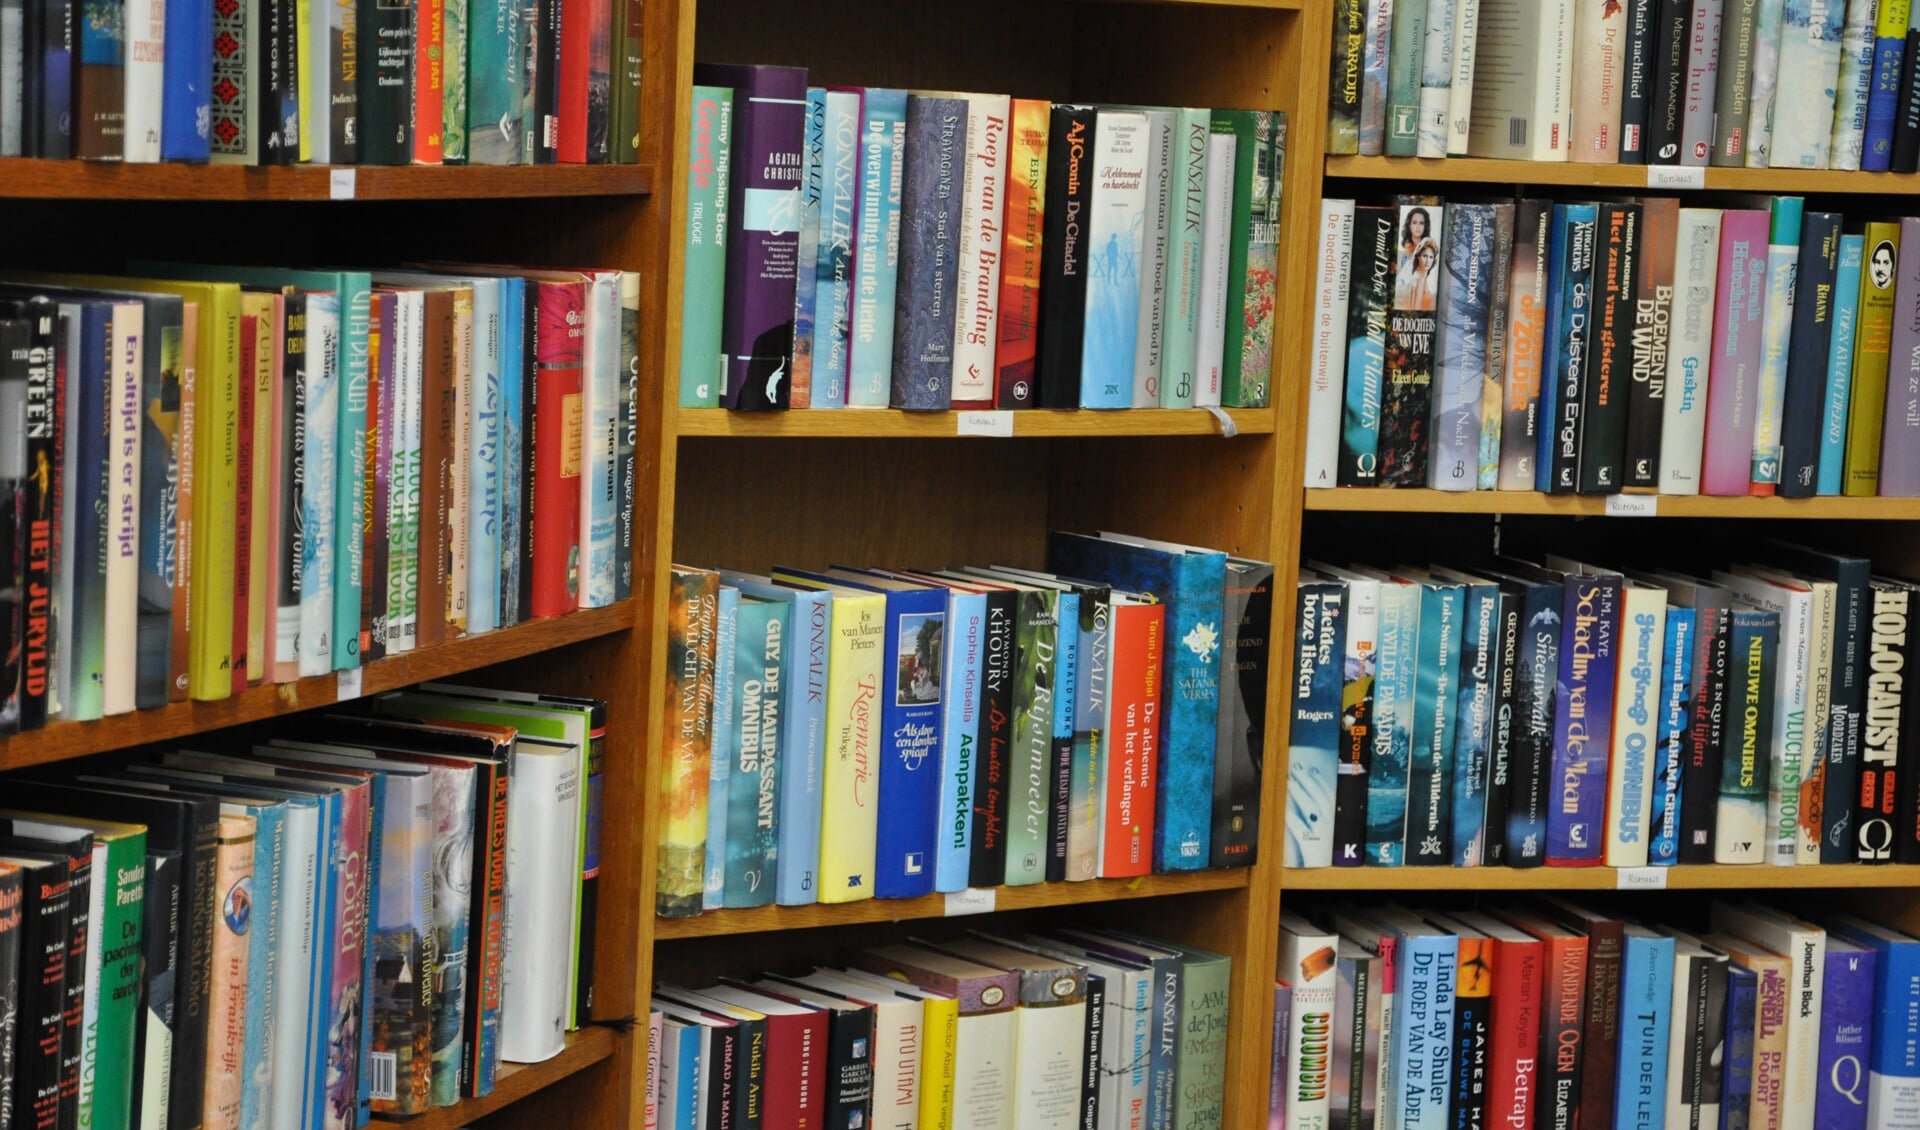  "De tijd dat de bibliotheek alleen wat kasten met boeken was, is echt voorbij", zegt directeur Fons Steggink.  